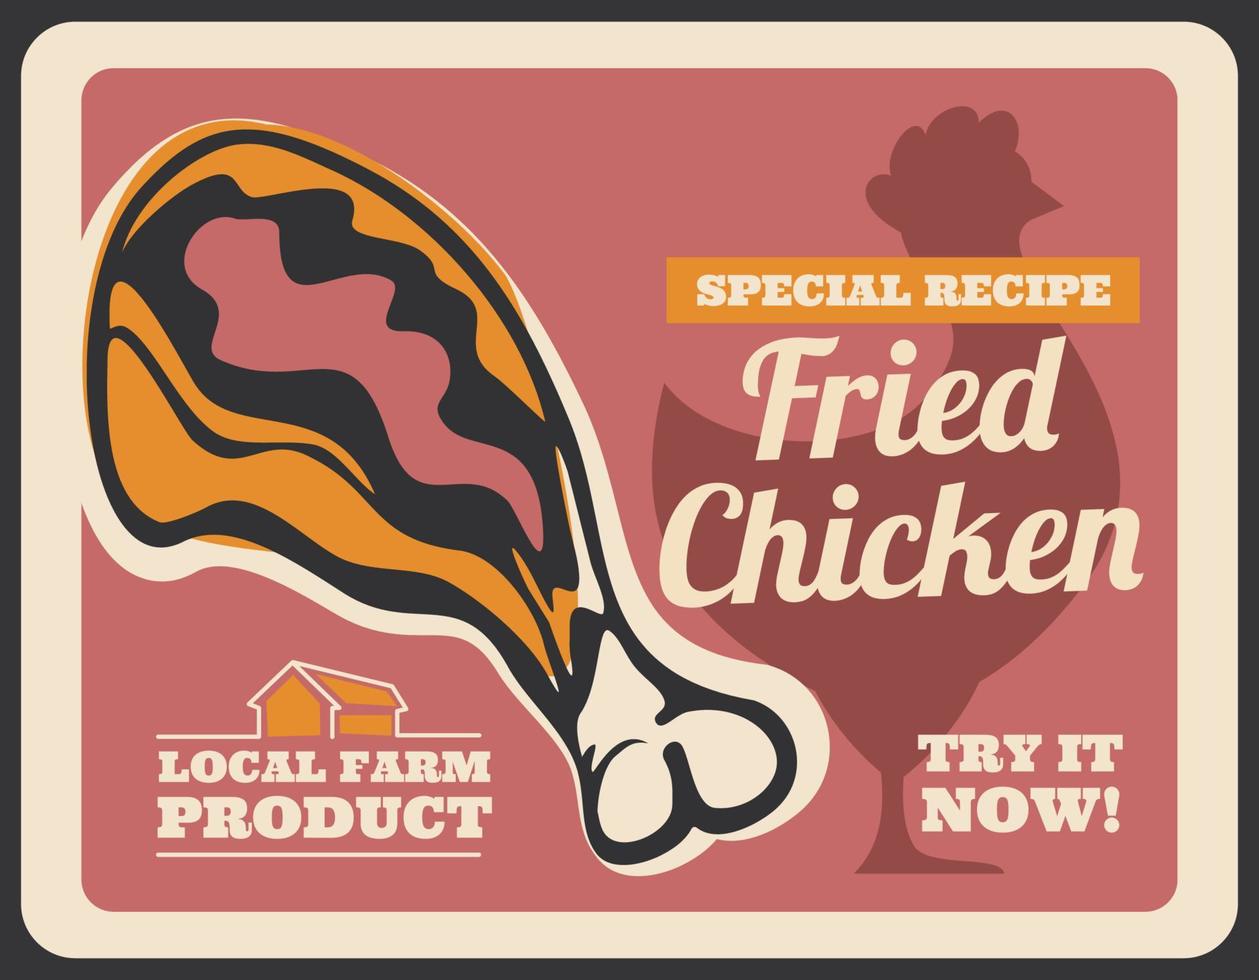 cartaz retrô de coxinha de frango frito de fast food vetor